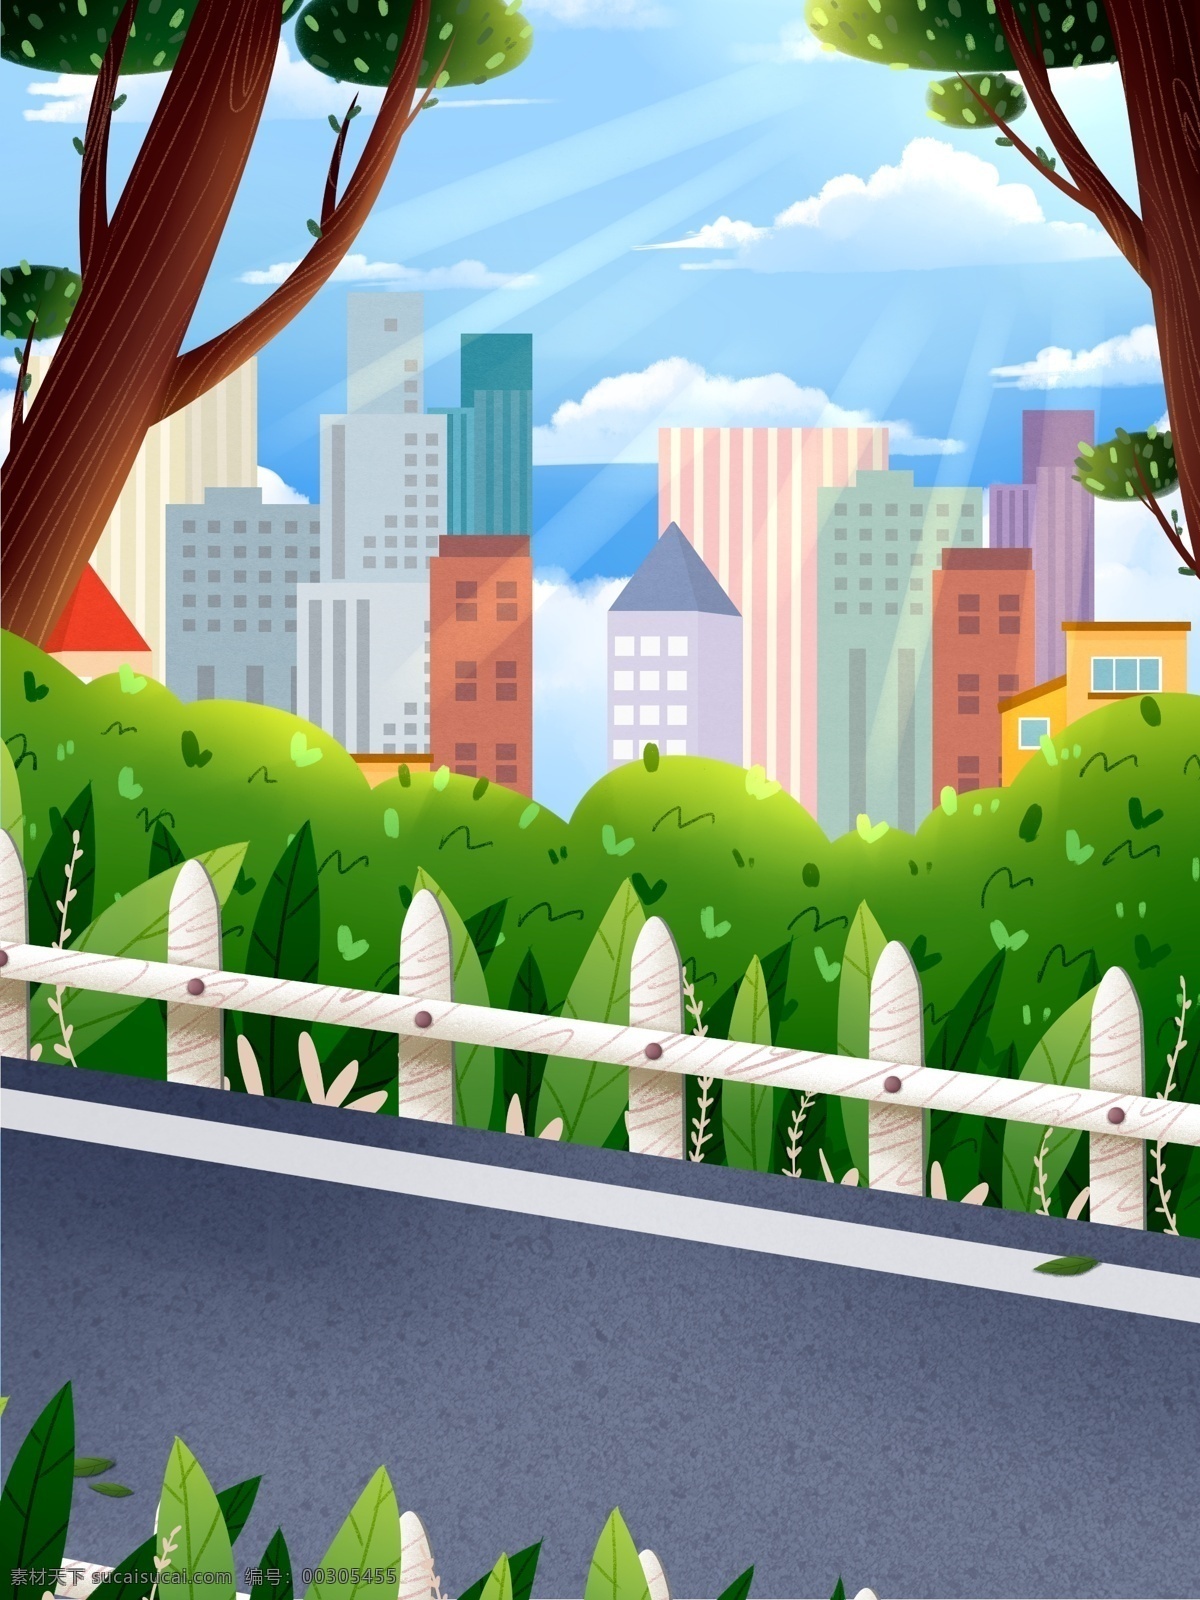 户外 风景 插画 背景 建筑物 房屋 跑道 植物 卡通 彩色 创意 装饰 设计背景 海报背景 简约 图案